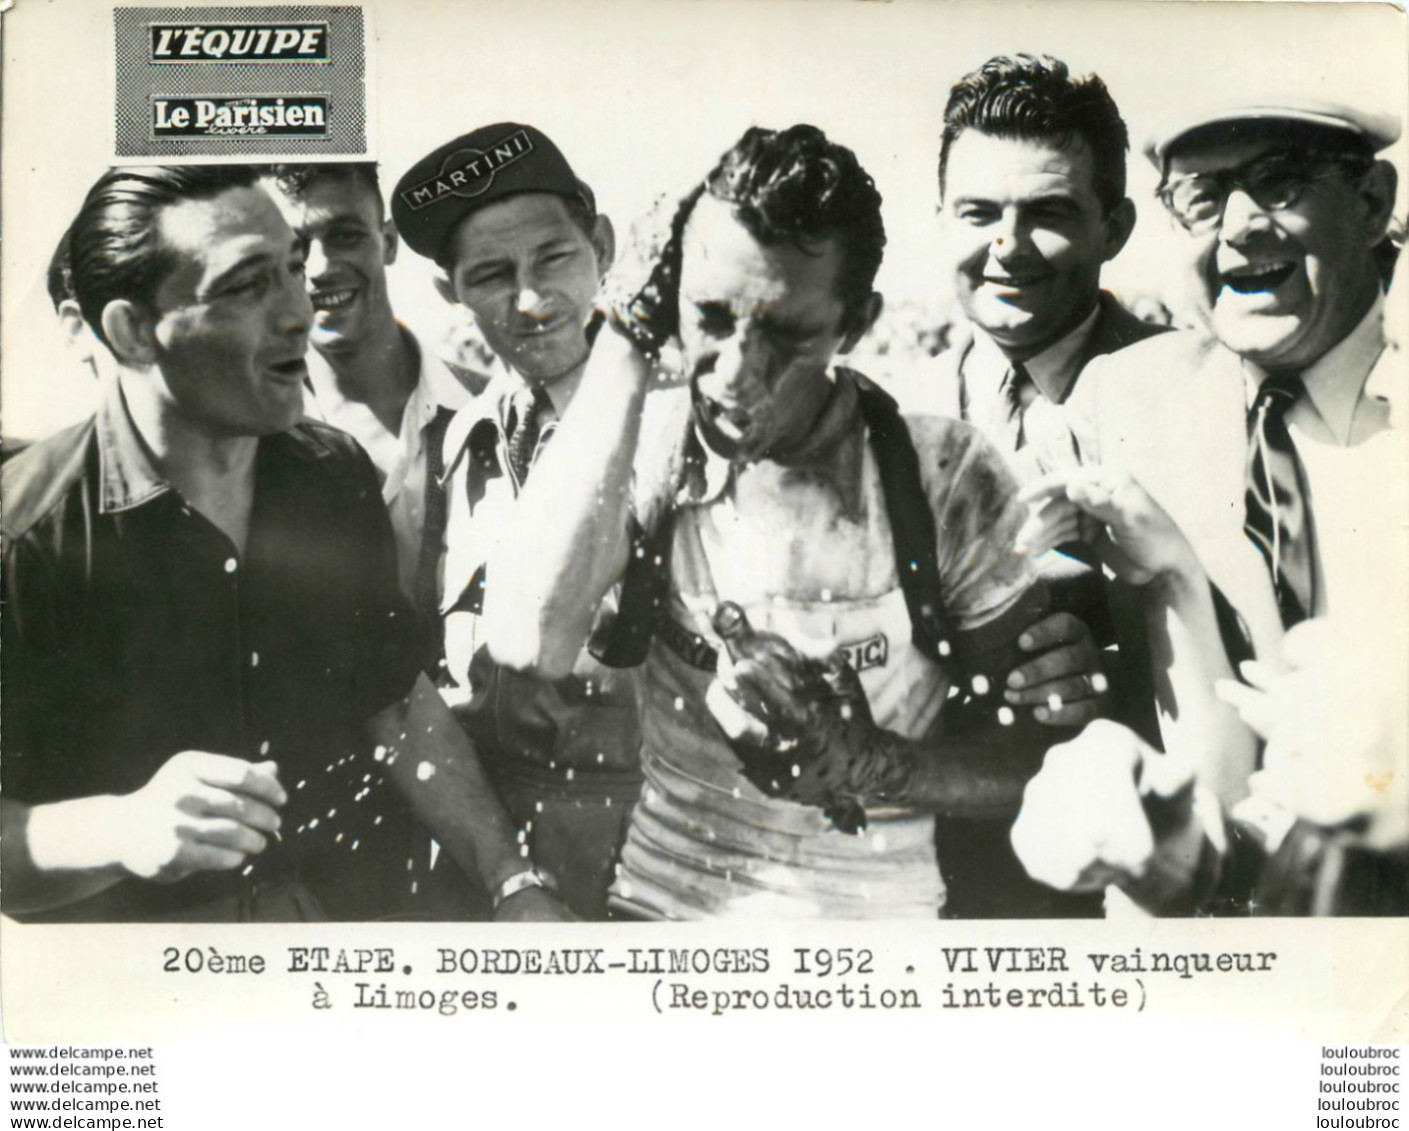 TOUR DE FRANCE 1952 VIVIER VAINQUEUR A LIMOGES 20èm ETAPE PHOTO PRESSE ORIGINALE ARGENTIQUE  20X15CM EQUIPE  LE PARISIEN - Deportes